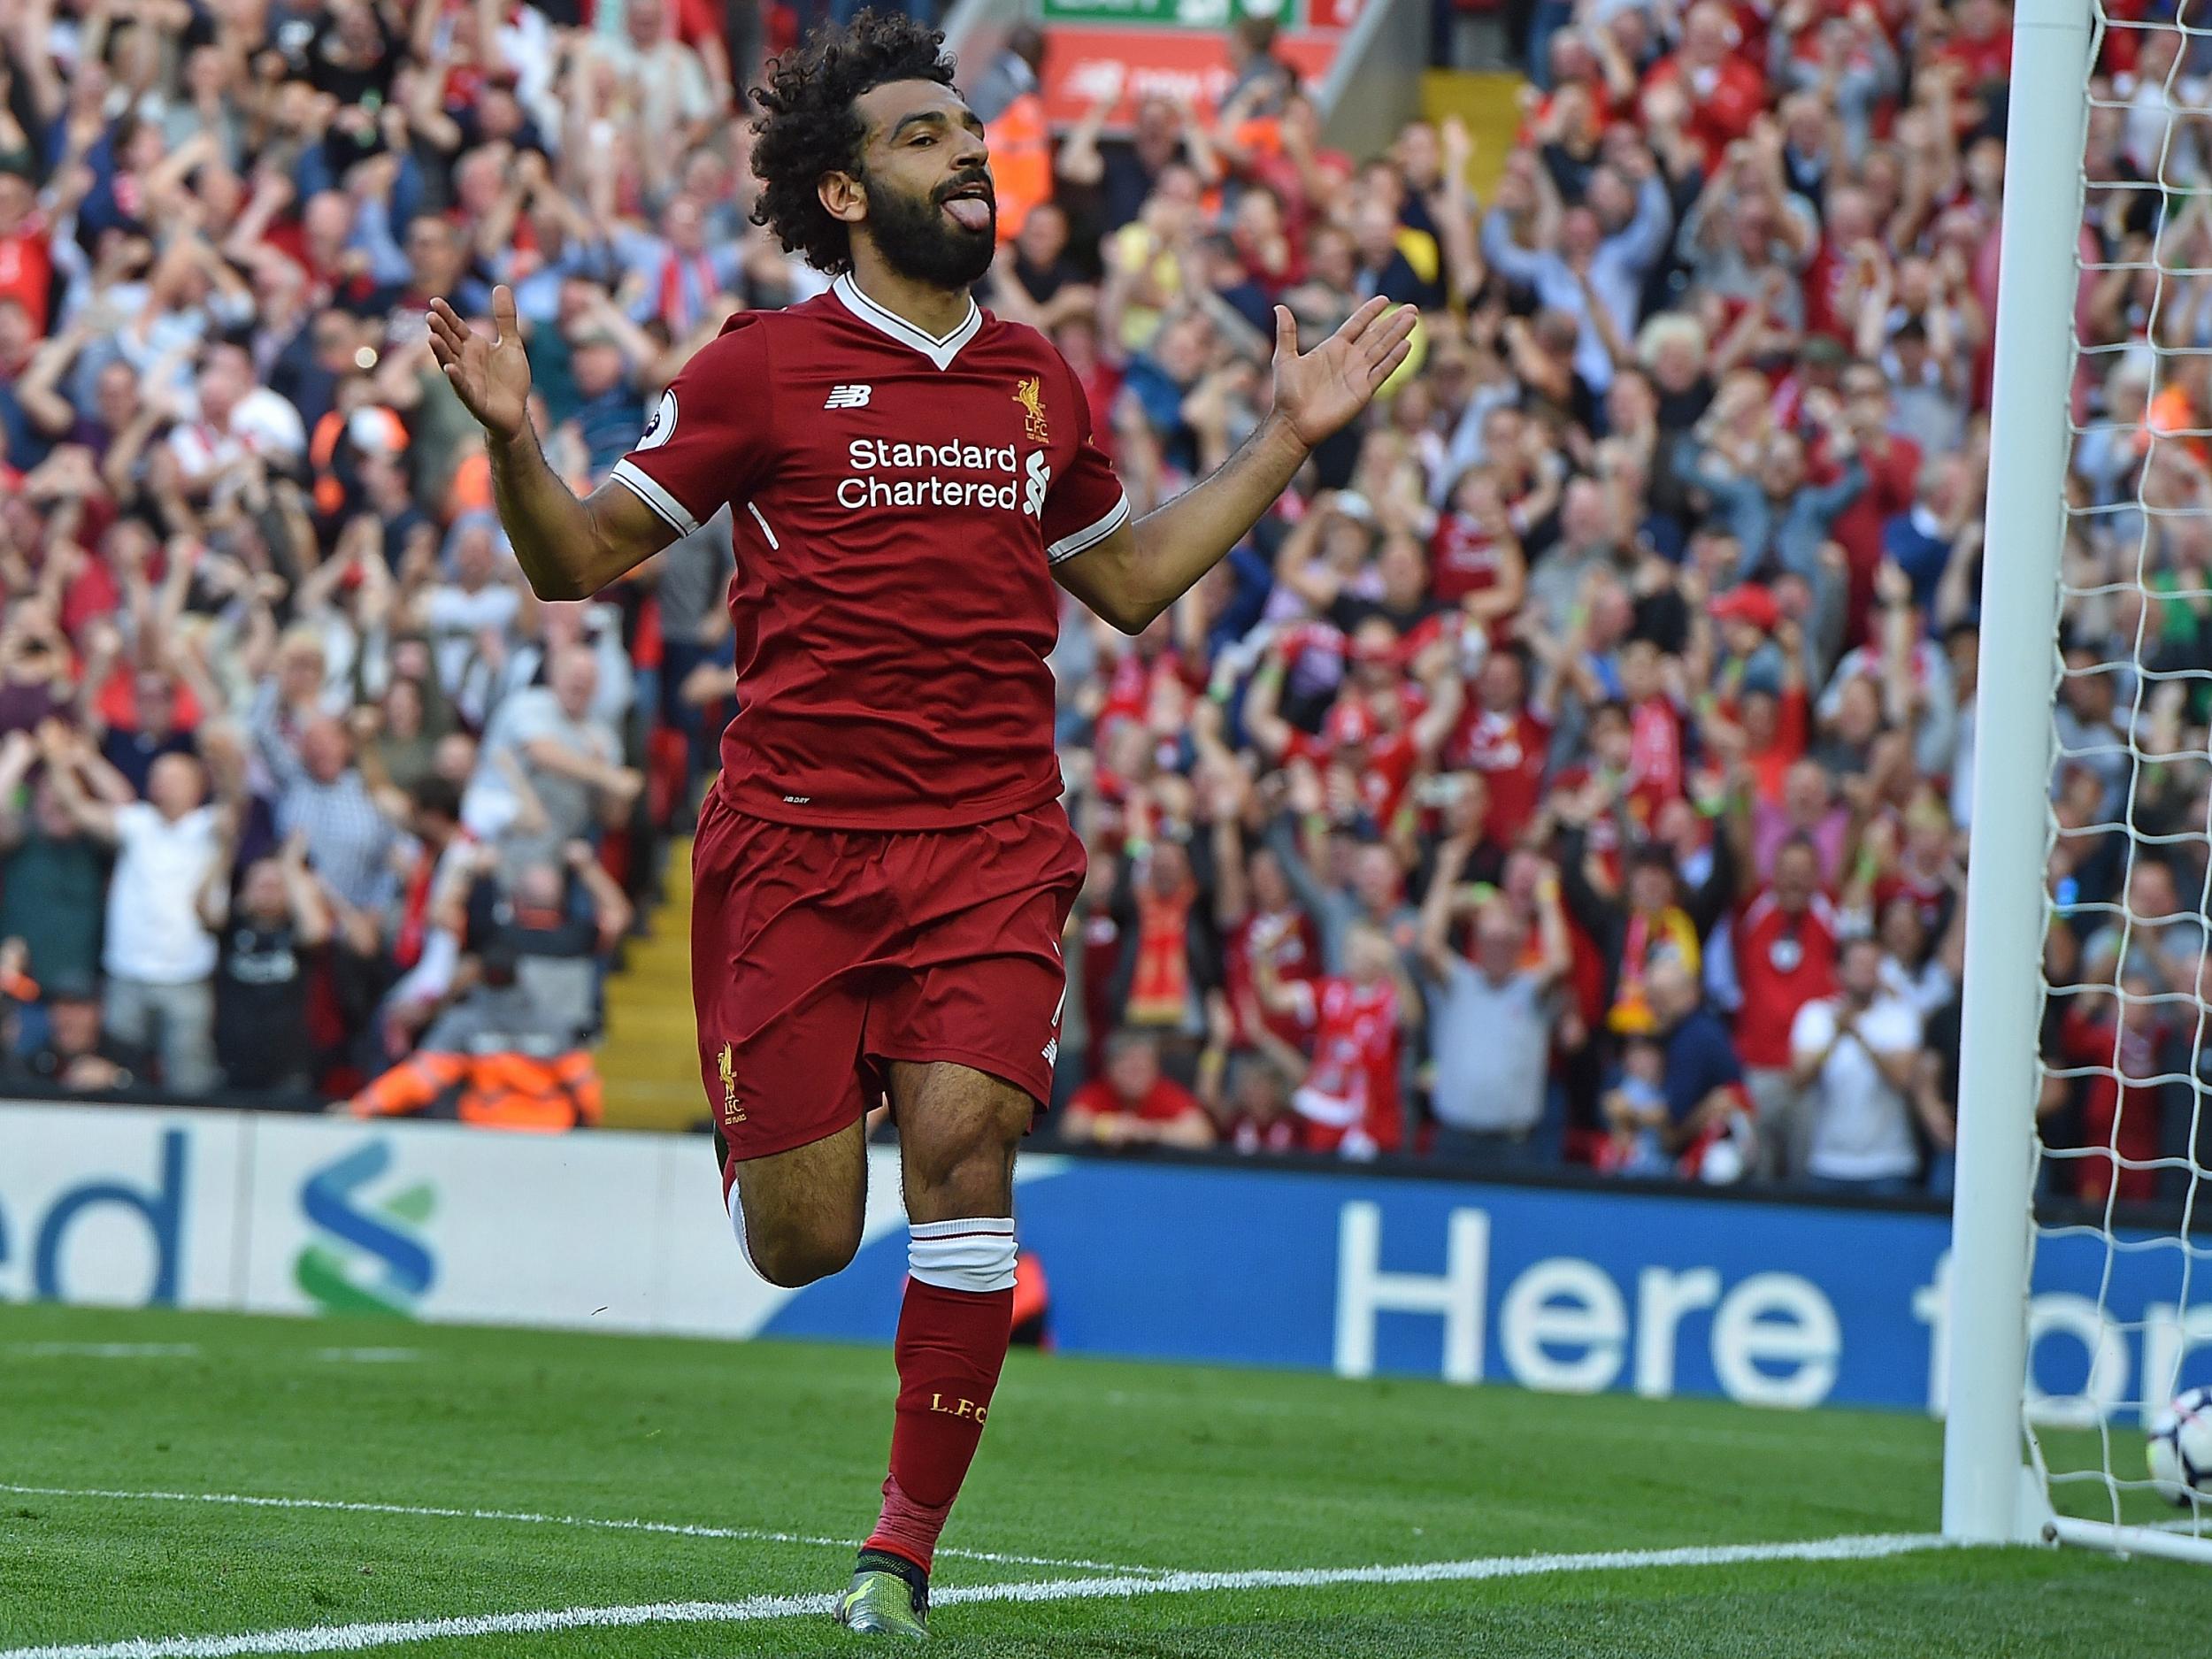 Mohamed Salah celebrates scoring for Liverpool against Arsenal